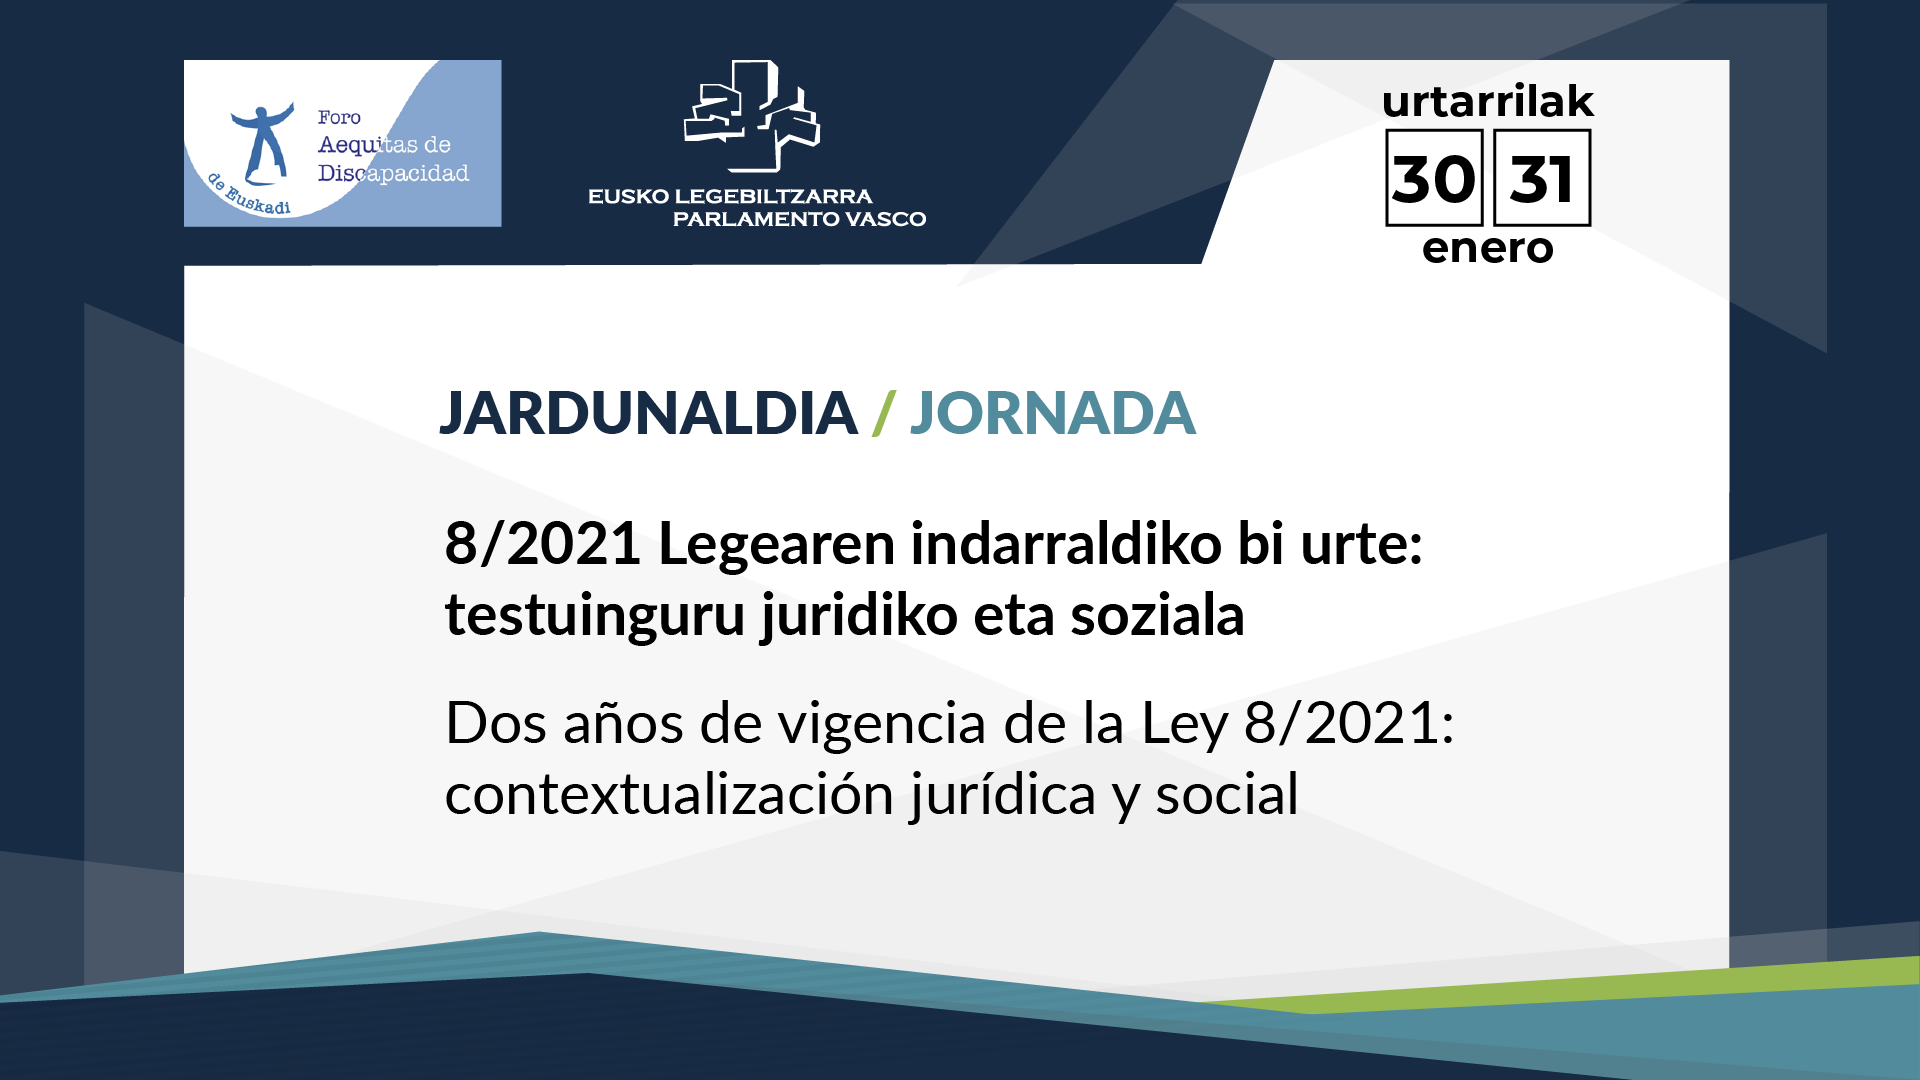 Dos años de vigencia de la Ley 8/2021: contextualización jurídica y social